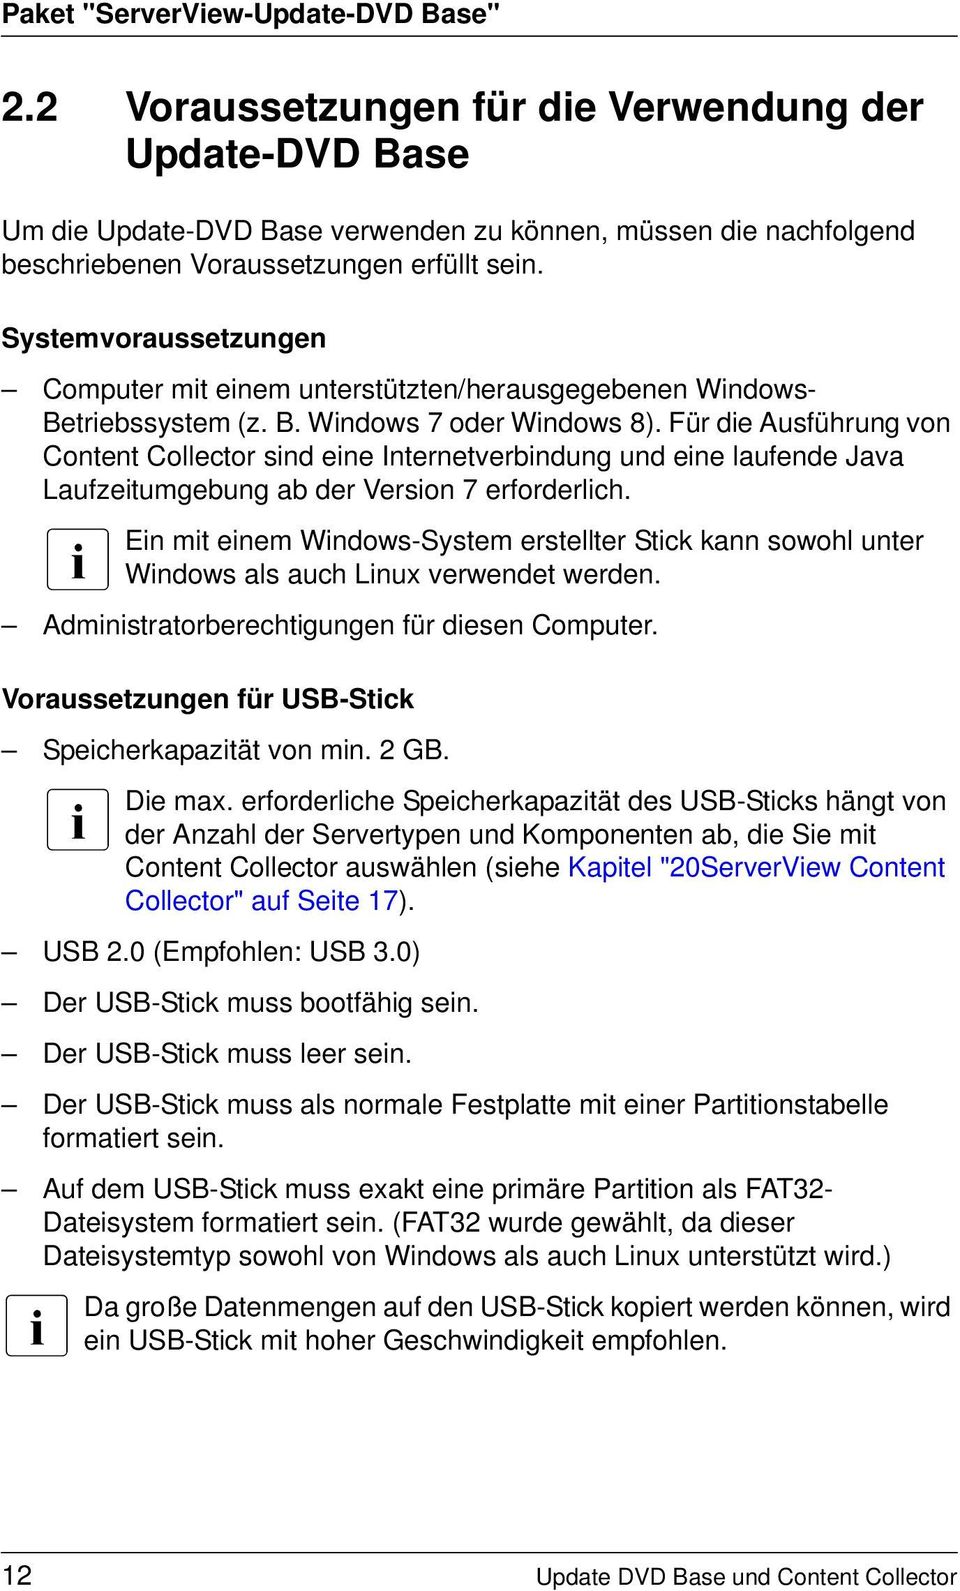 Systemvoraussetzungen Computer mit einem unterstützten/herausgegebenen Windows- Betriebssystem (z. B. Windows 7 oder Windows 8).